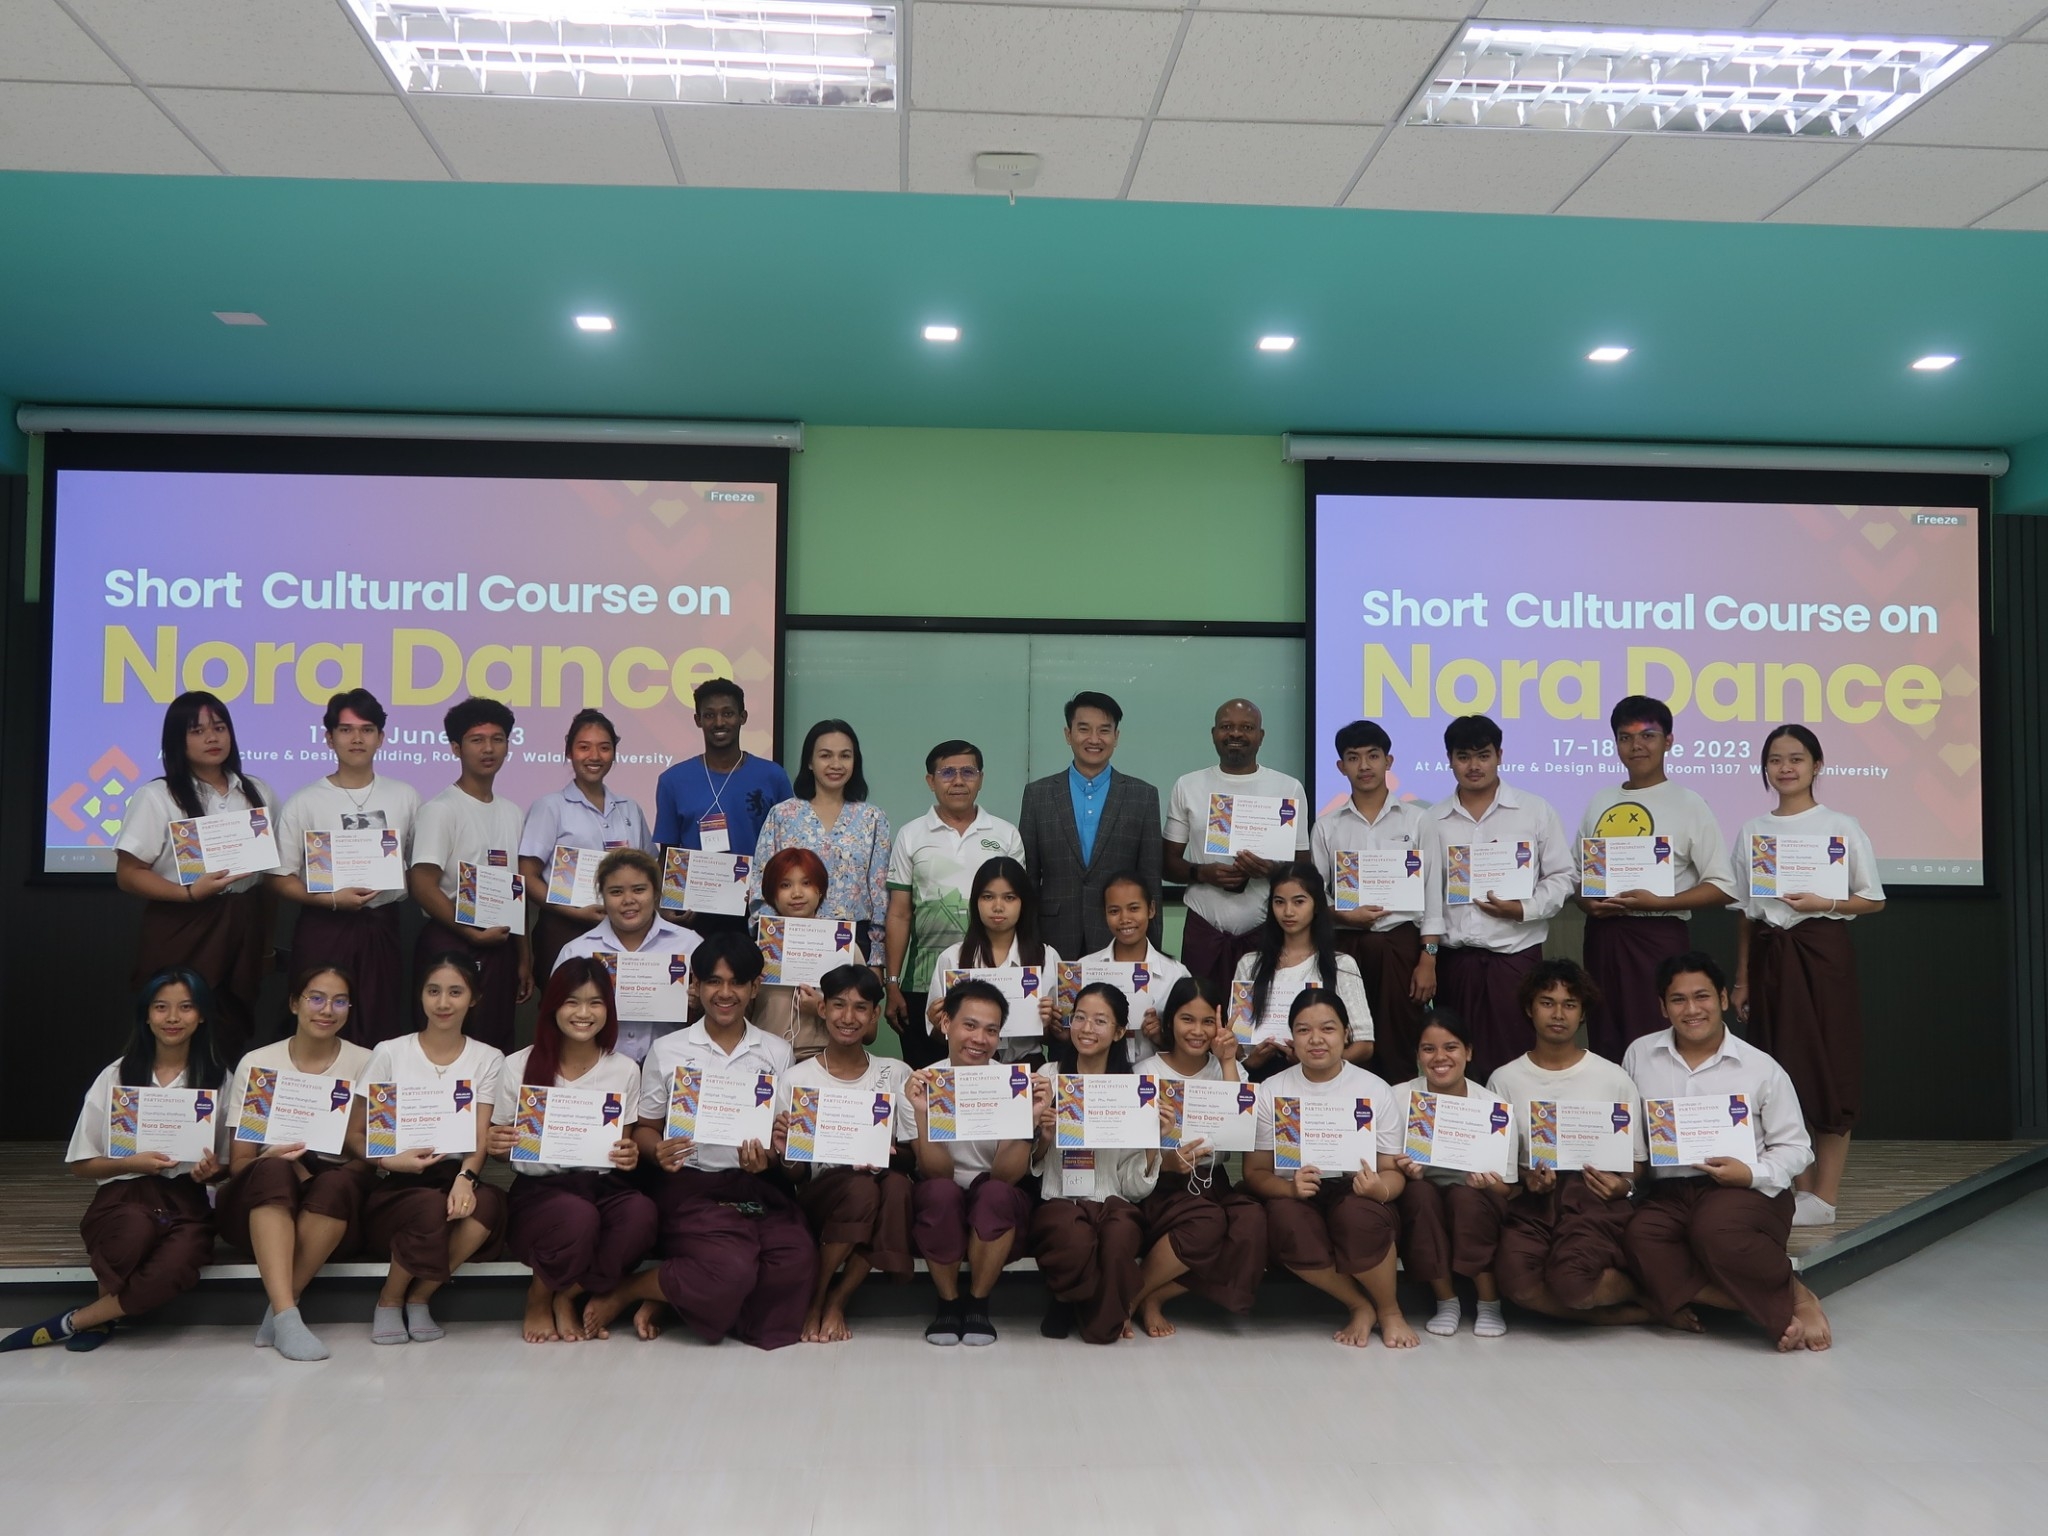 ศูนย์ส่งเสริมวัฒนธรรมและการกีฬาจัดโครงการ Short Cultural Course on Nora Dance ถ่ายทอดมรดกวัฒนธรรมให้กับนักศึกษานานาชาติ